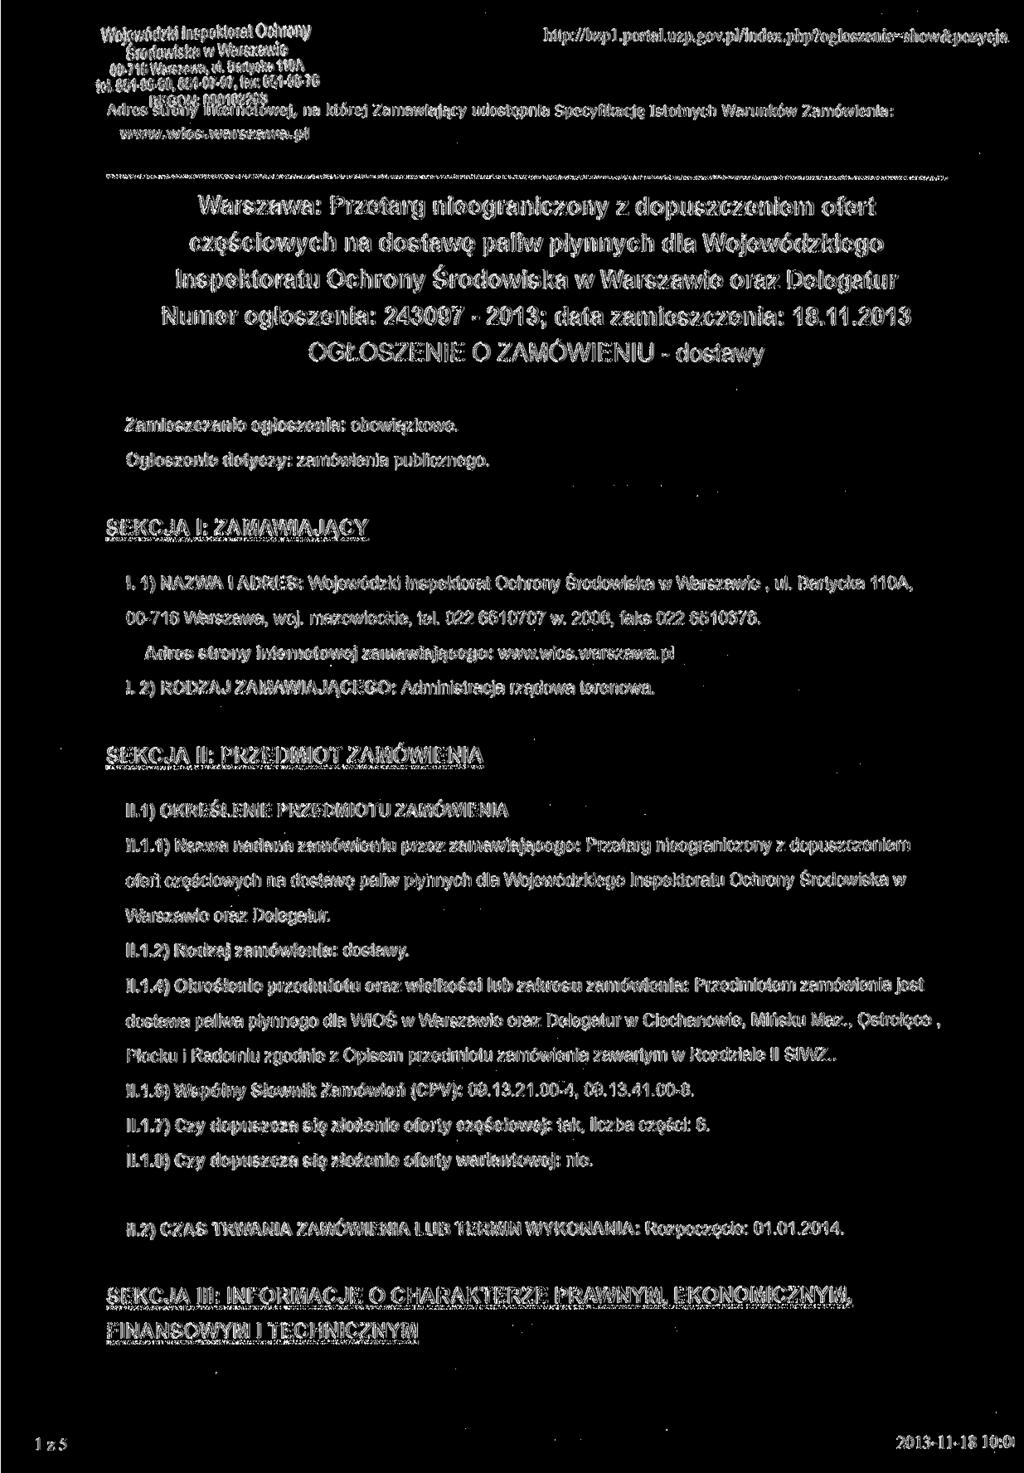 Wojewódzki Inspektorat Ochrony Środowiska w Warszawie 00-716 Warszawa, ul. Bartycka 110A teł 651-06-60,651-07-07, fax: 651-06-76 http://bzp l.portal.uzp.gov.pl/index.php?